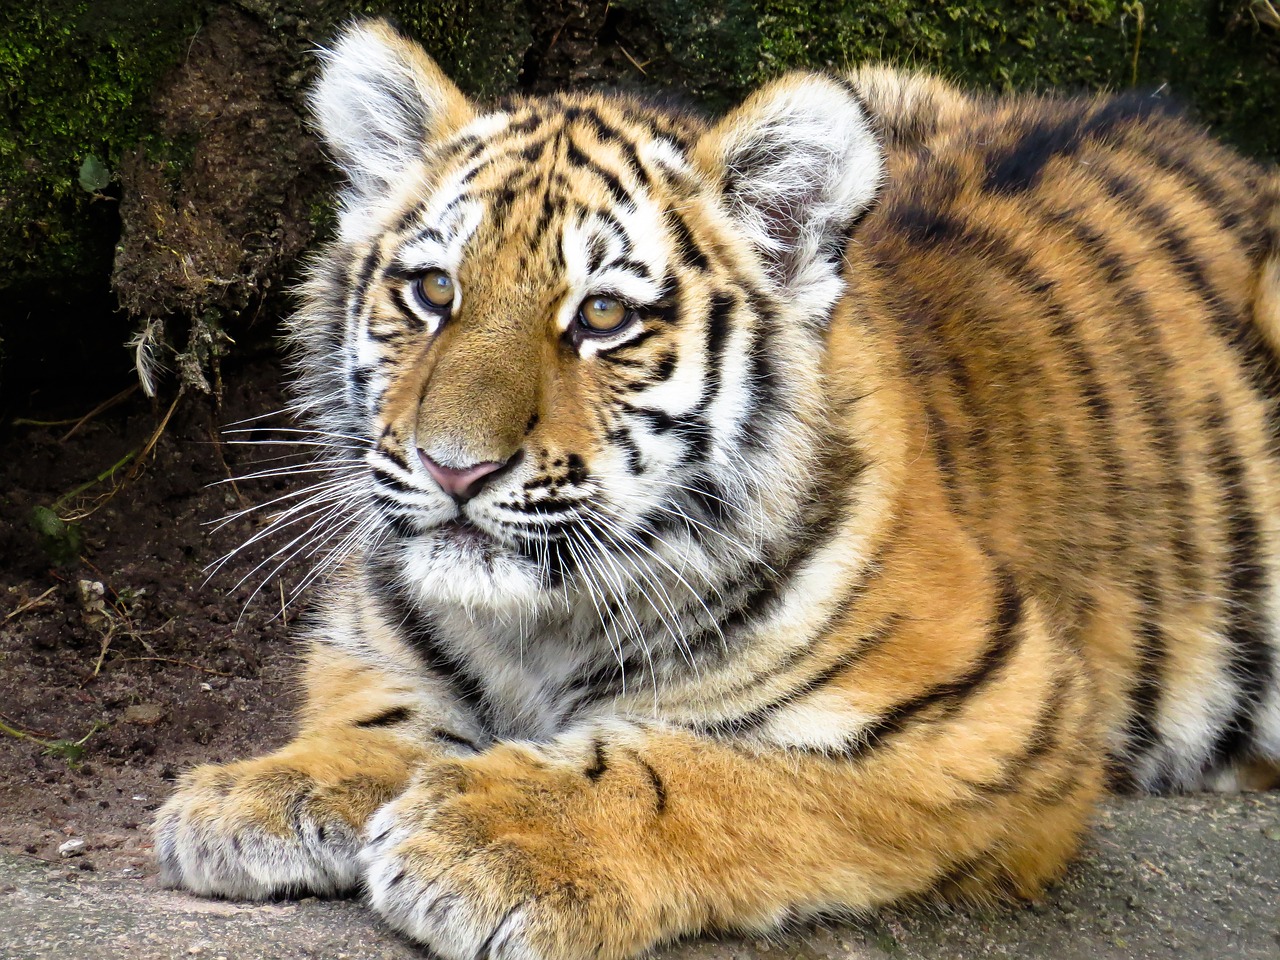 Gyvūnai, Tigras, Plėšrūnas, Jaunas Gyvūnas, Jaunasis Tigras, Katė, Uždaryti, Pavojingas, Zoologijos Sodas, Tiergarten